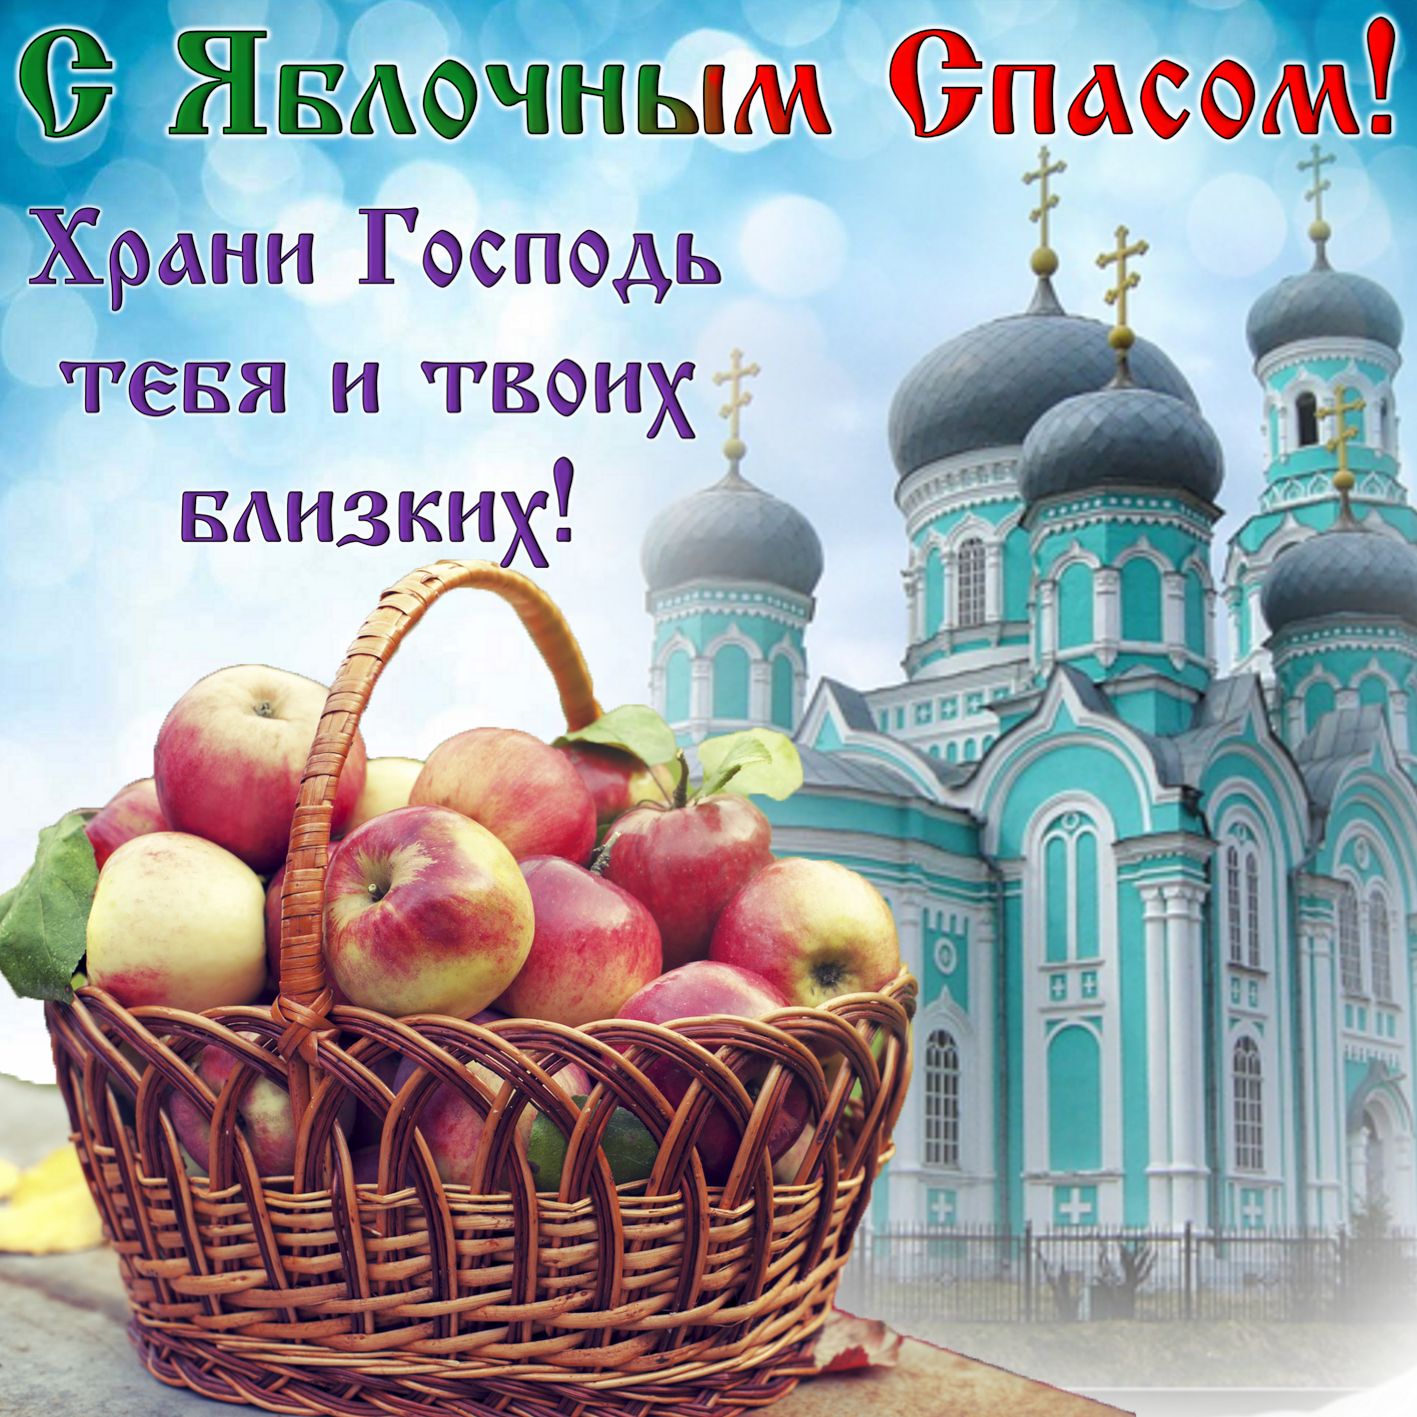 с яблочным спасом открытки - праздничные поздравления на праздник спаса яблочного: Храни Господь тебя и твоих близких!